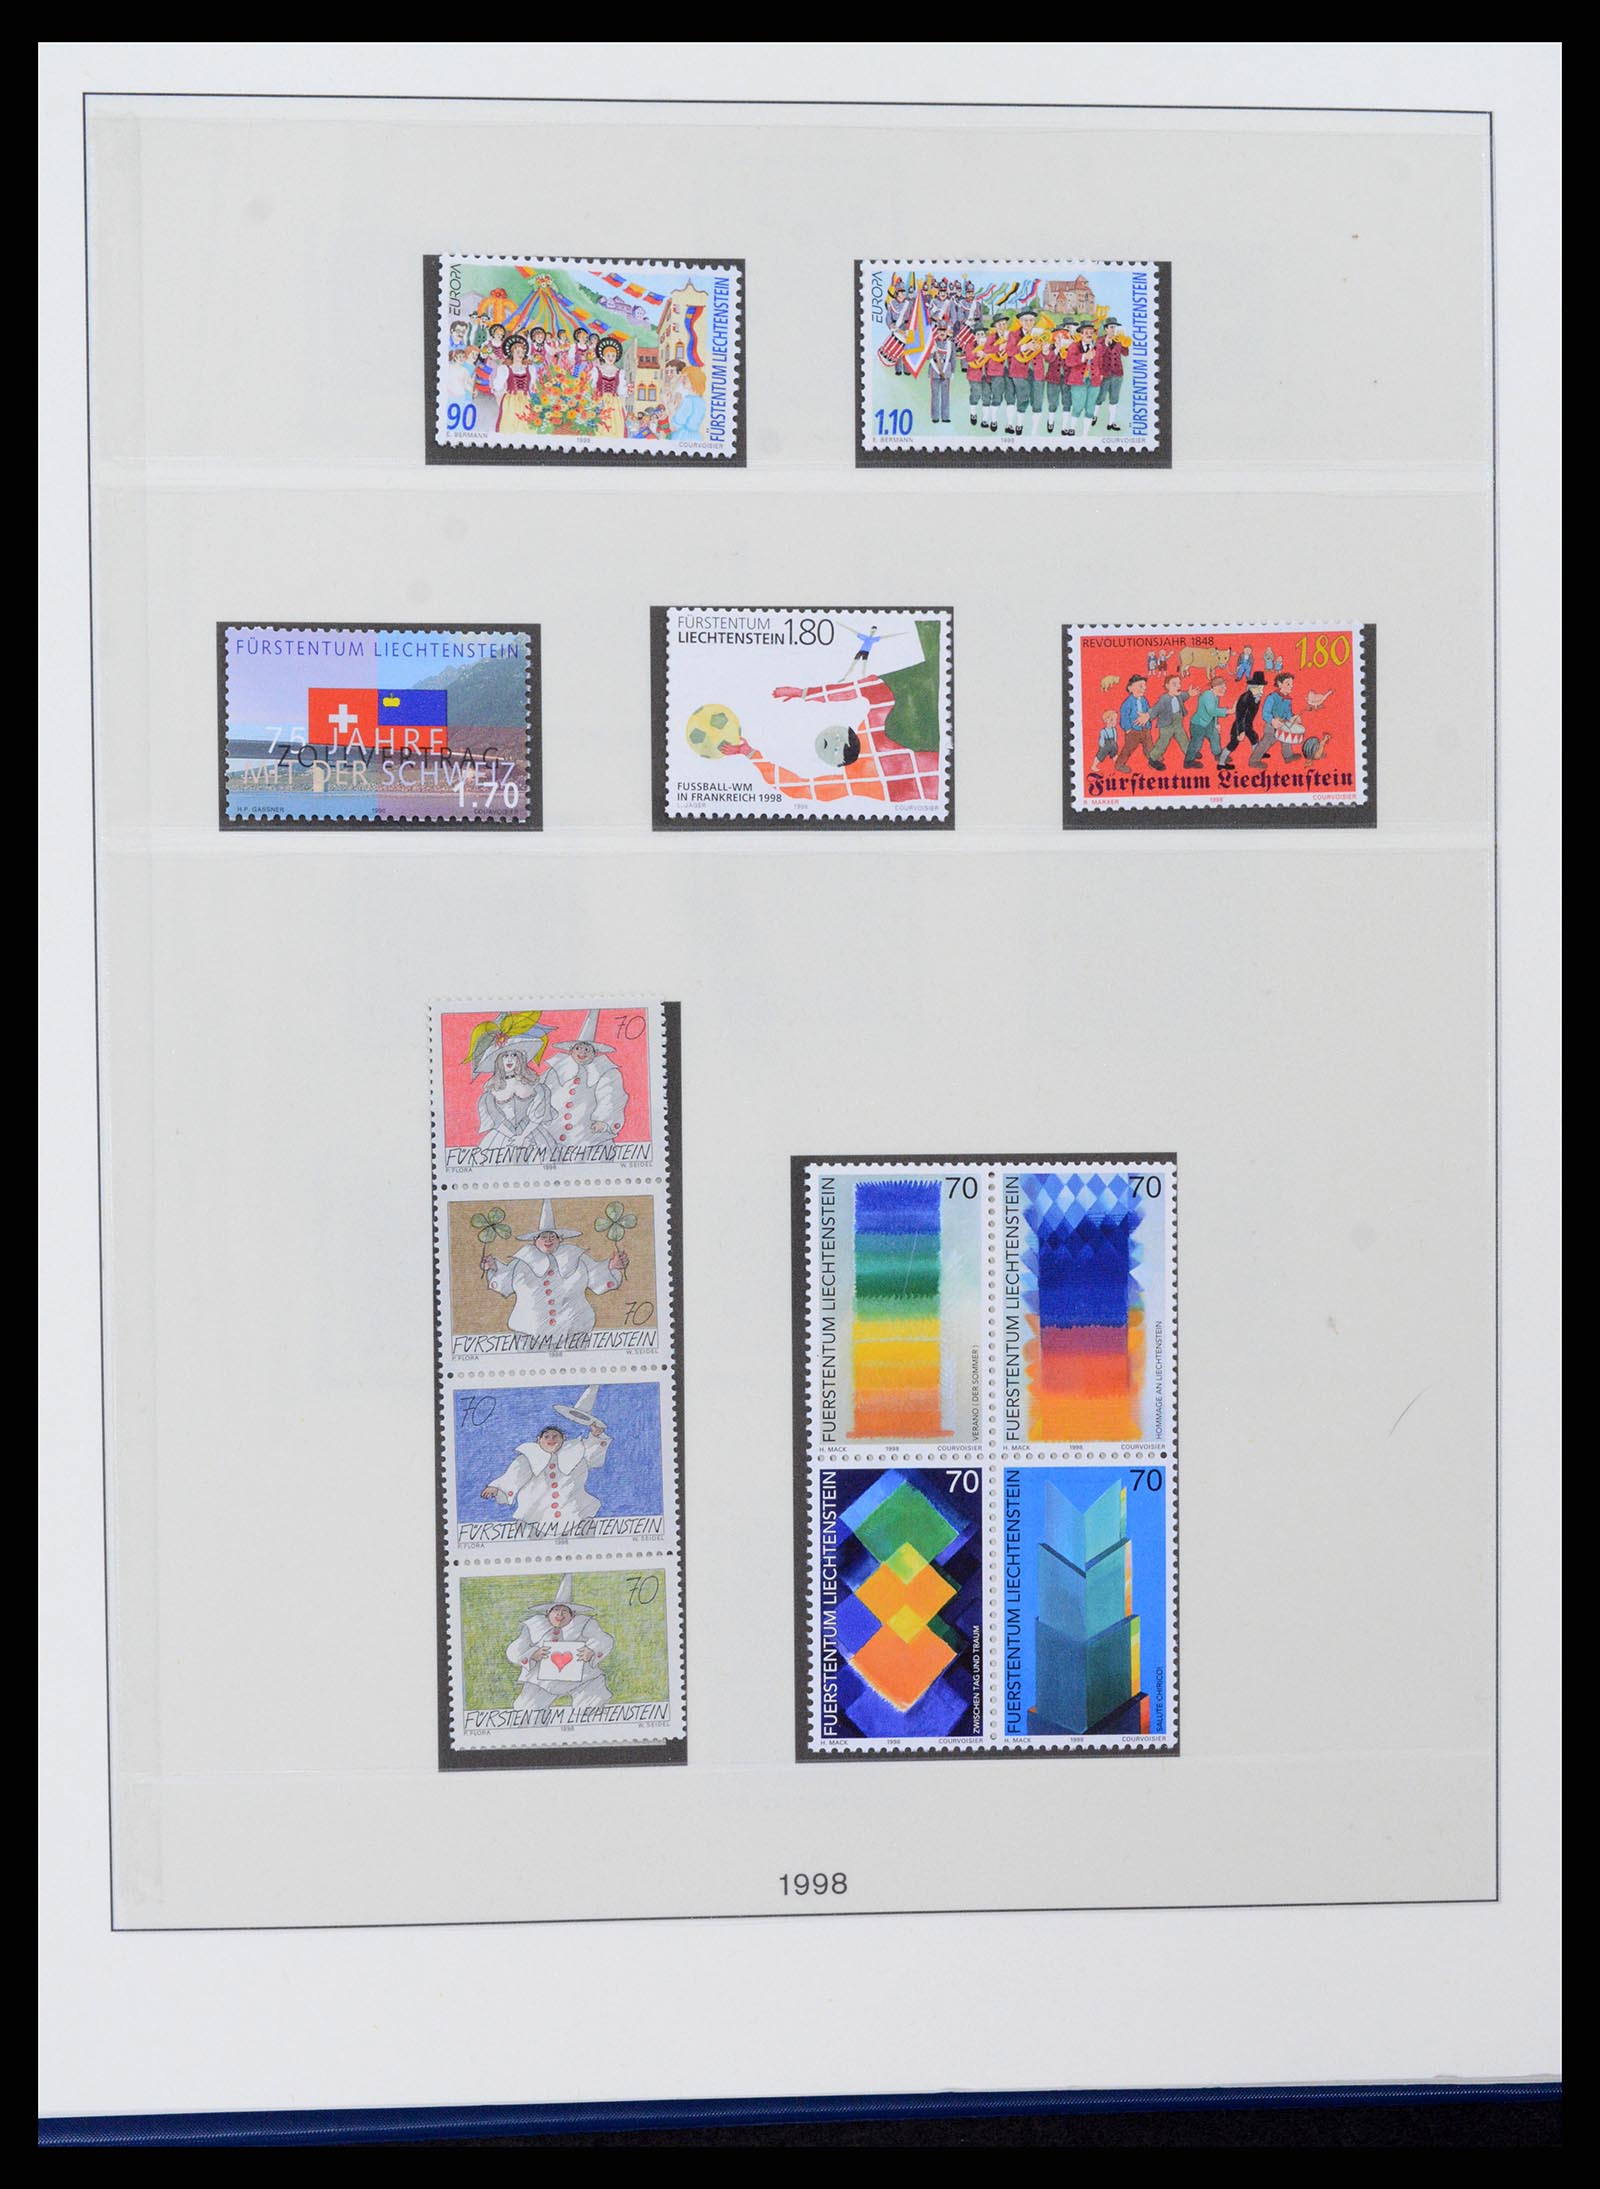 37295 119 - Stamp collection 37295 Liechtenstein 1912-2009.